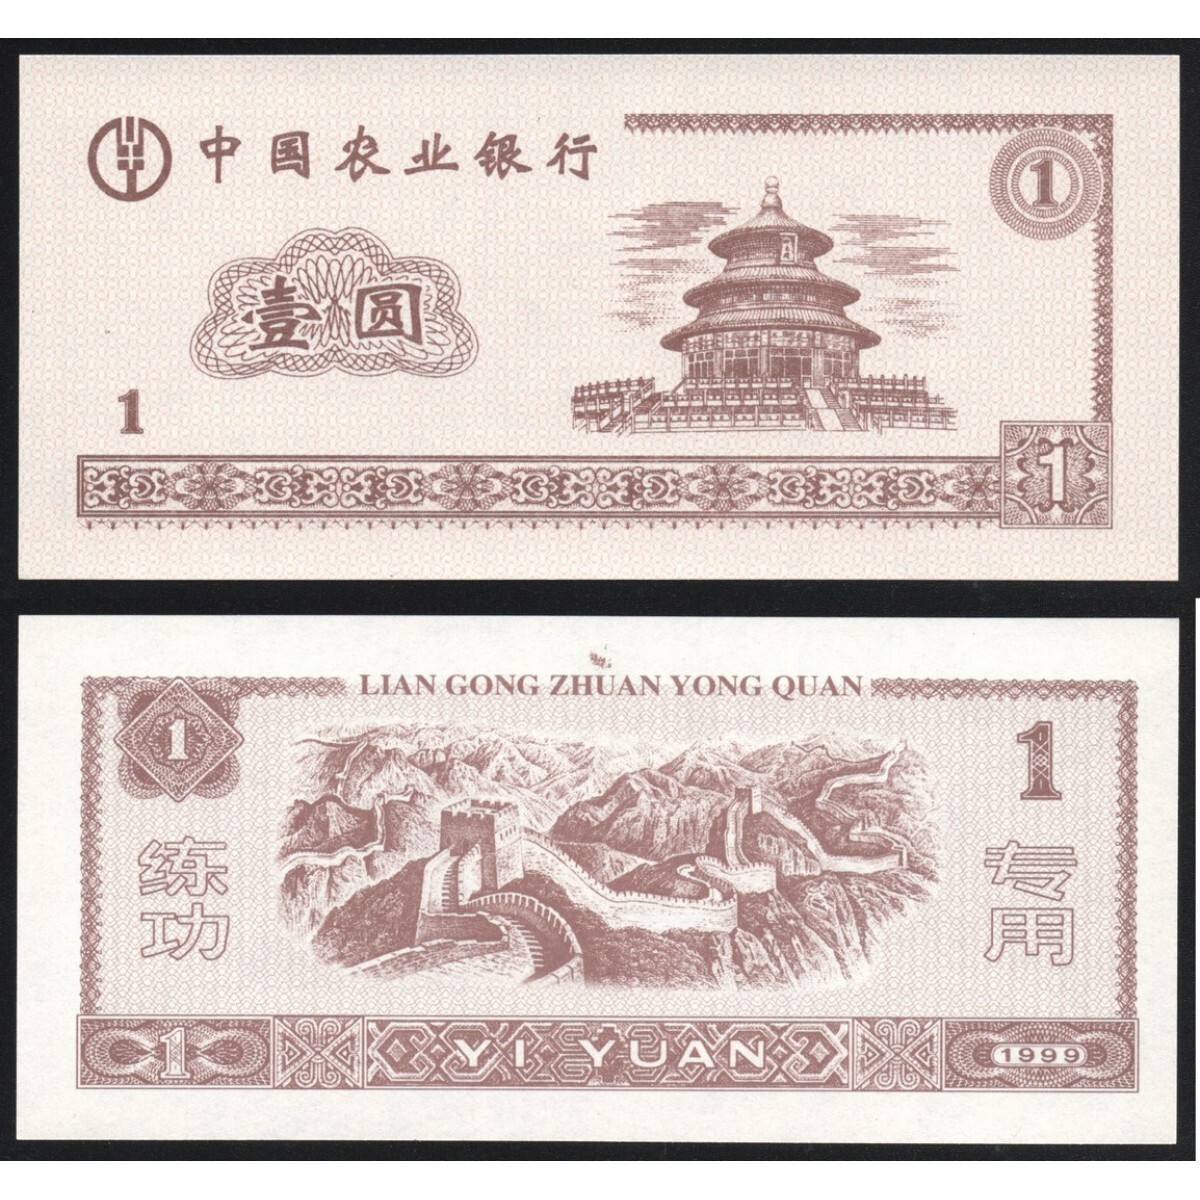 Один юань к рублю. Китайские банкноты 1 Yuan 1999. Банкнота Китая Lian Gong. 1 Юань 1999 года. Китайская валюта в рублях.